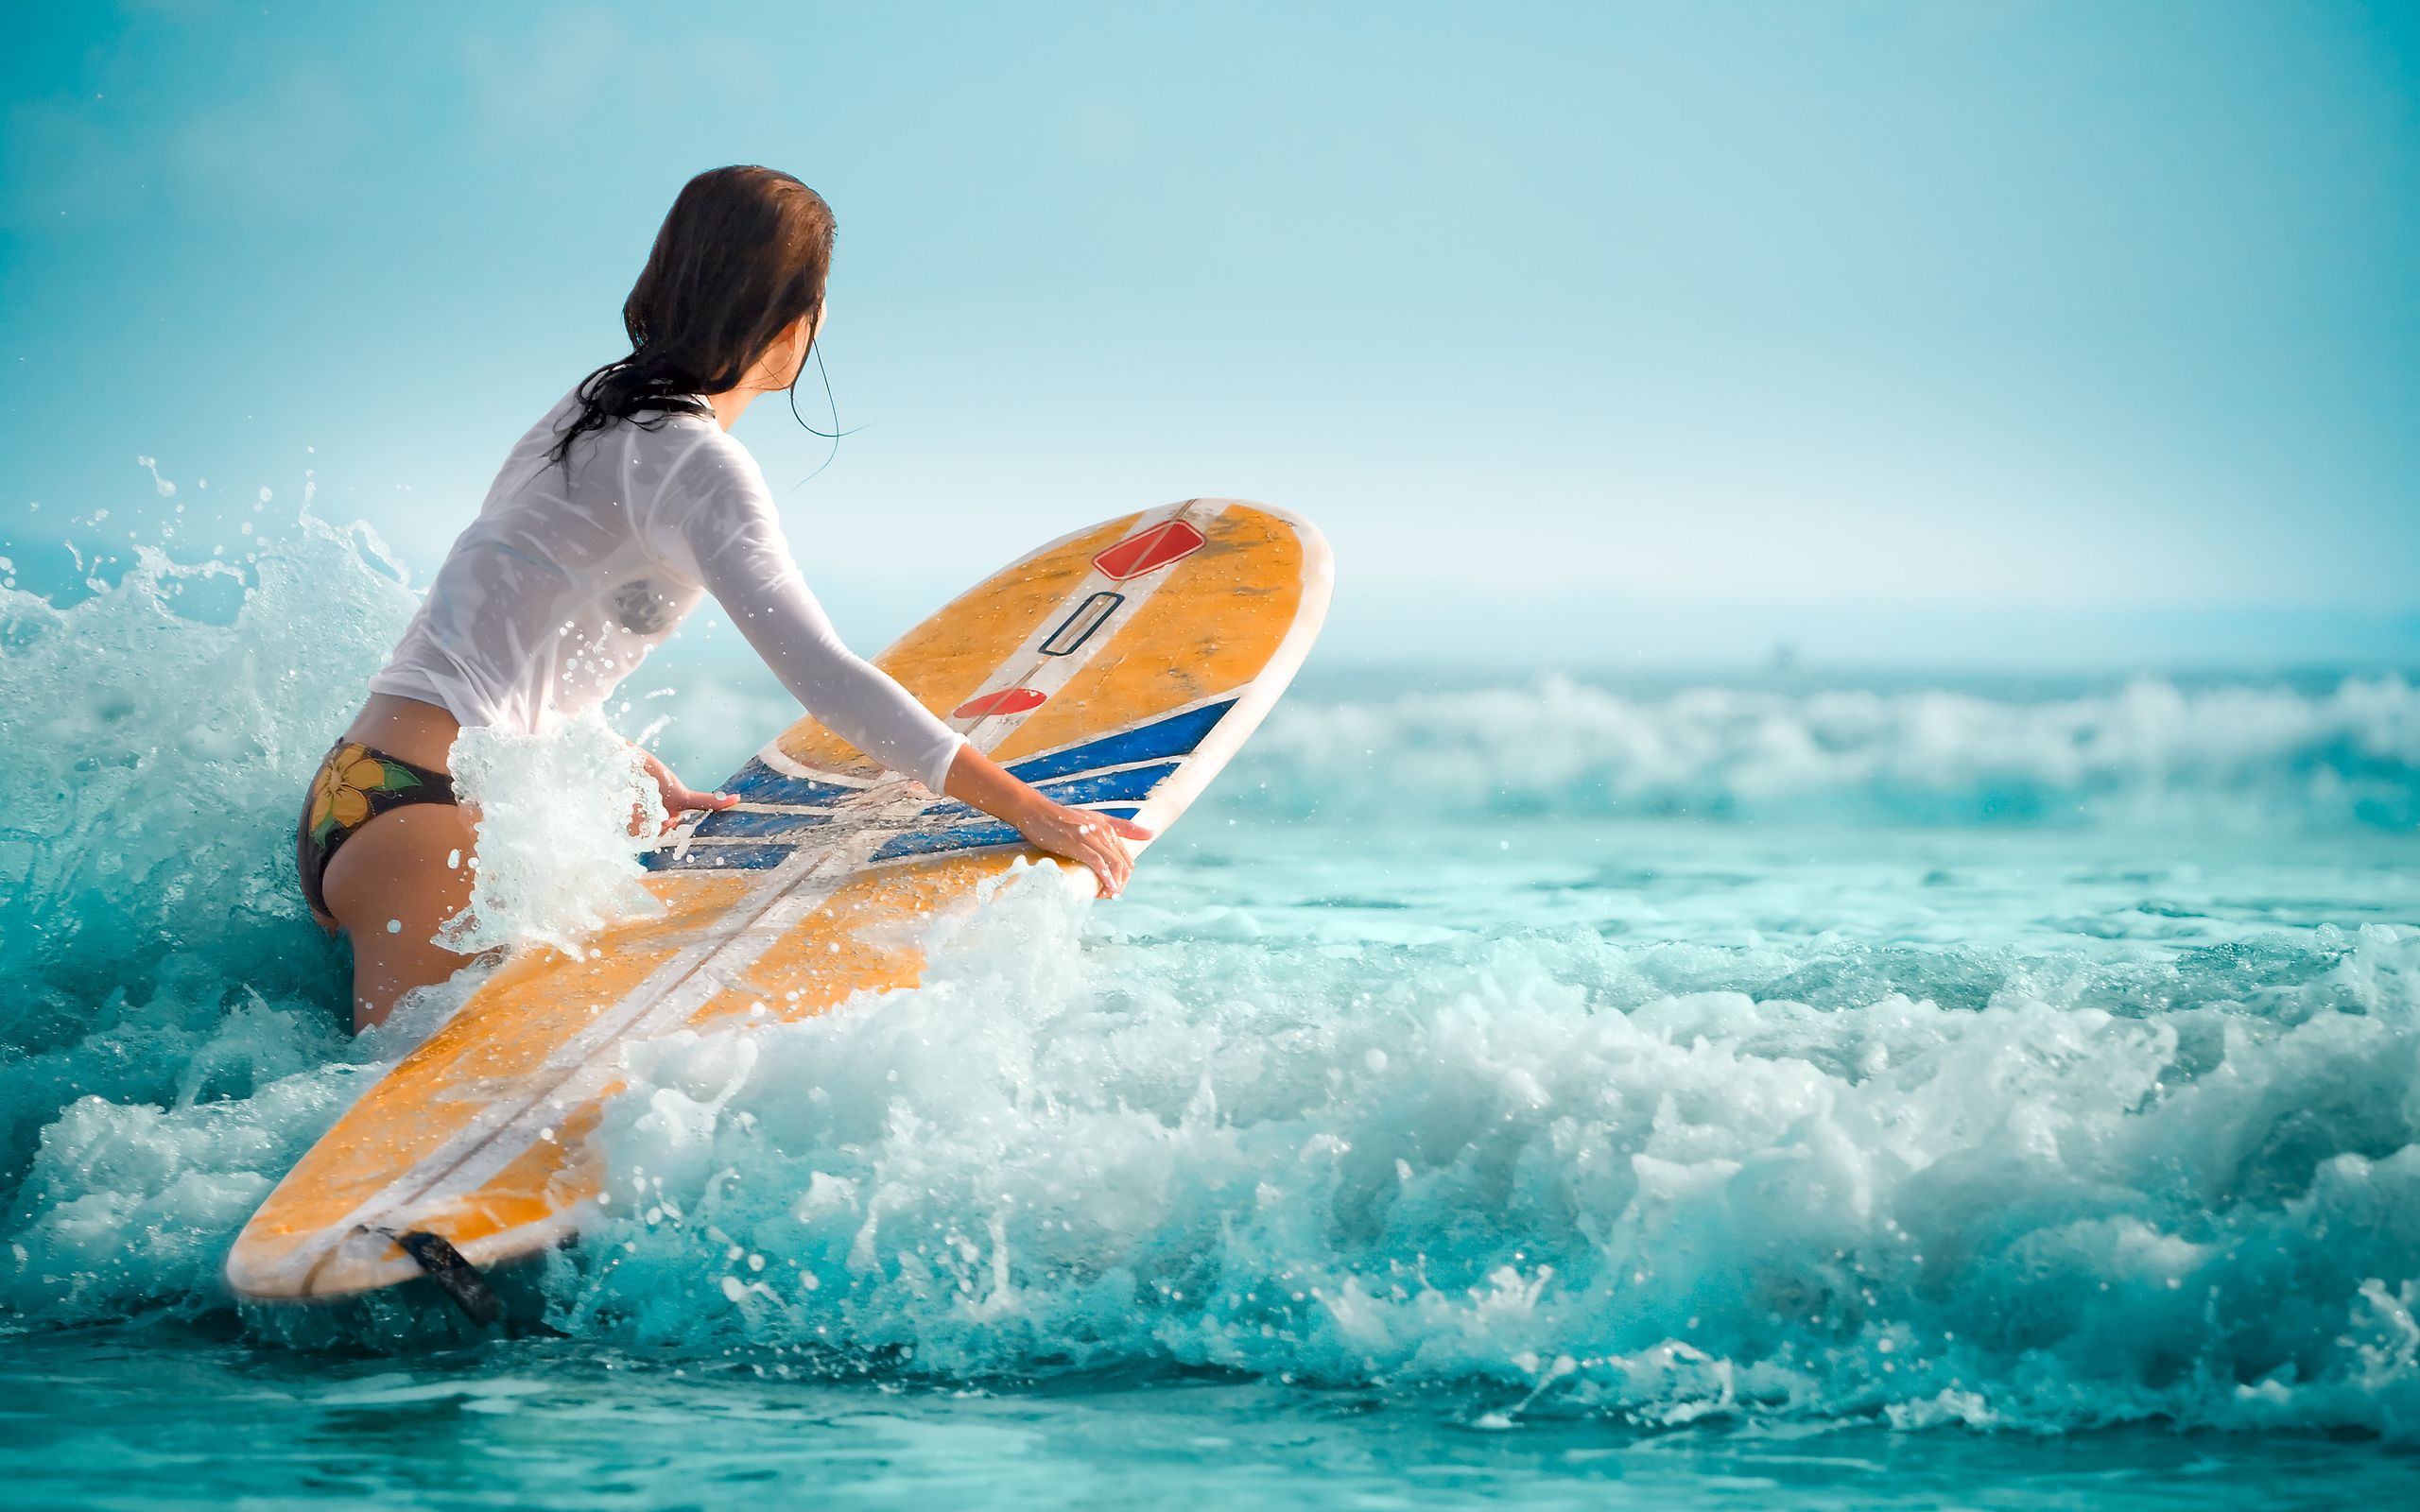 Surfing Girl Surfing wallpaper Surfing waves Surfing